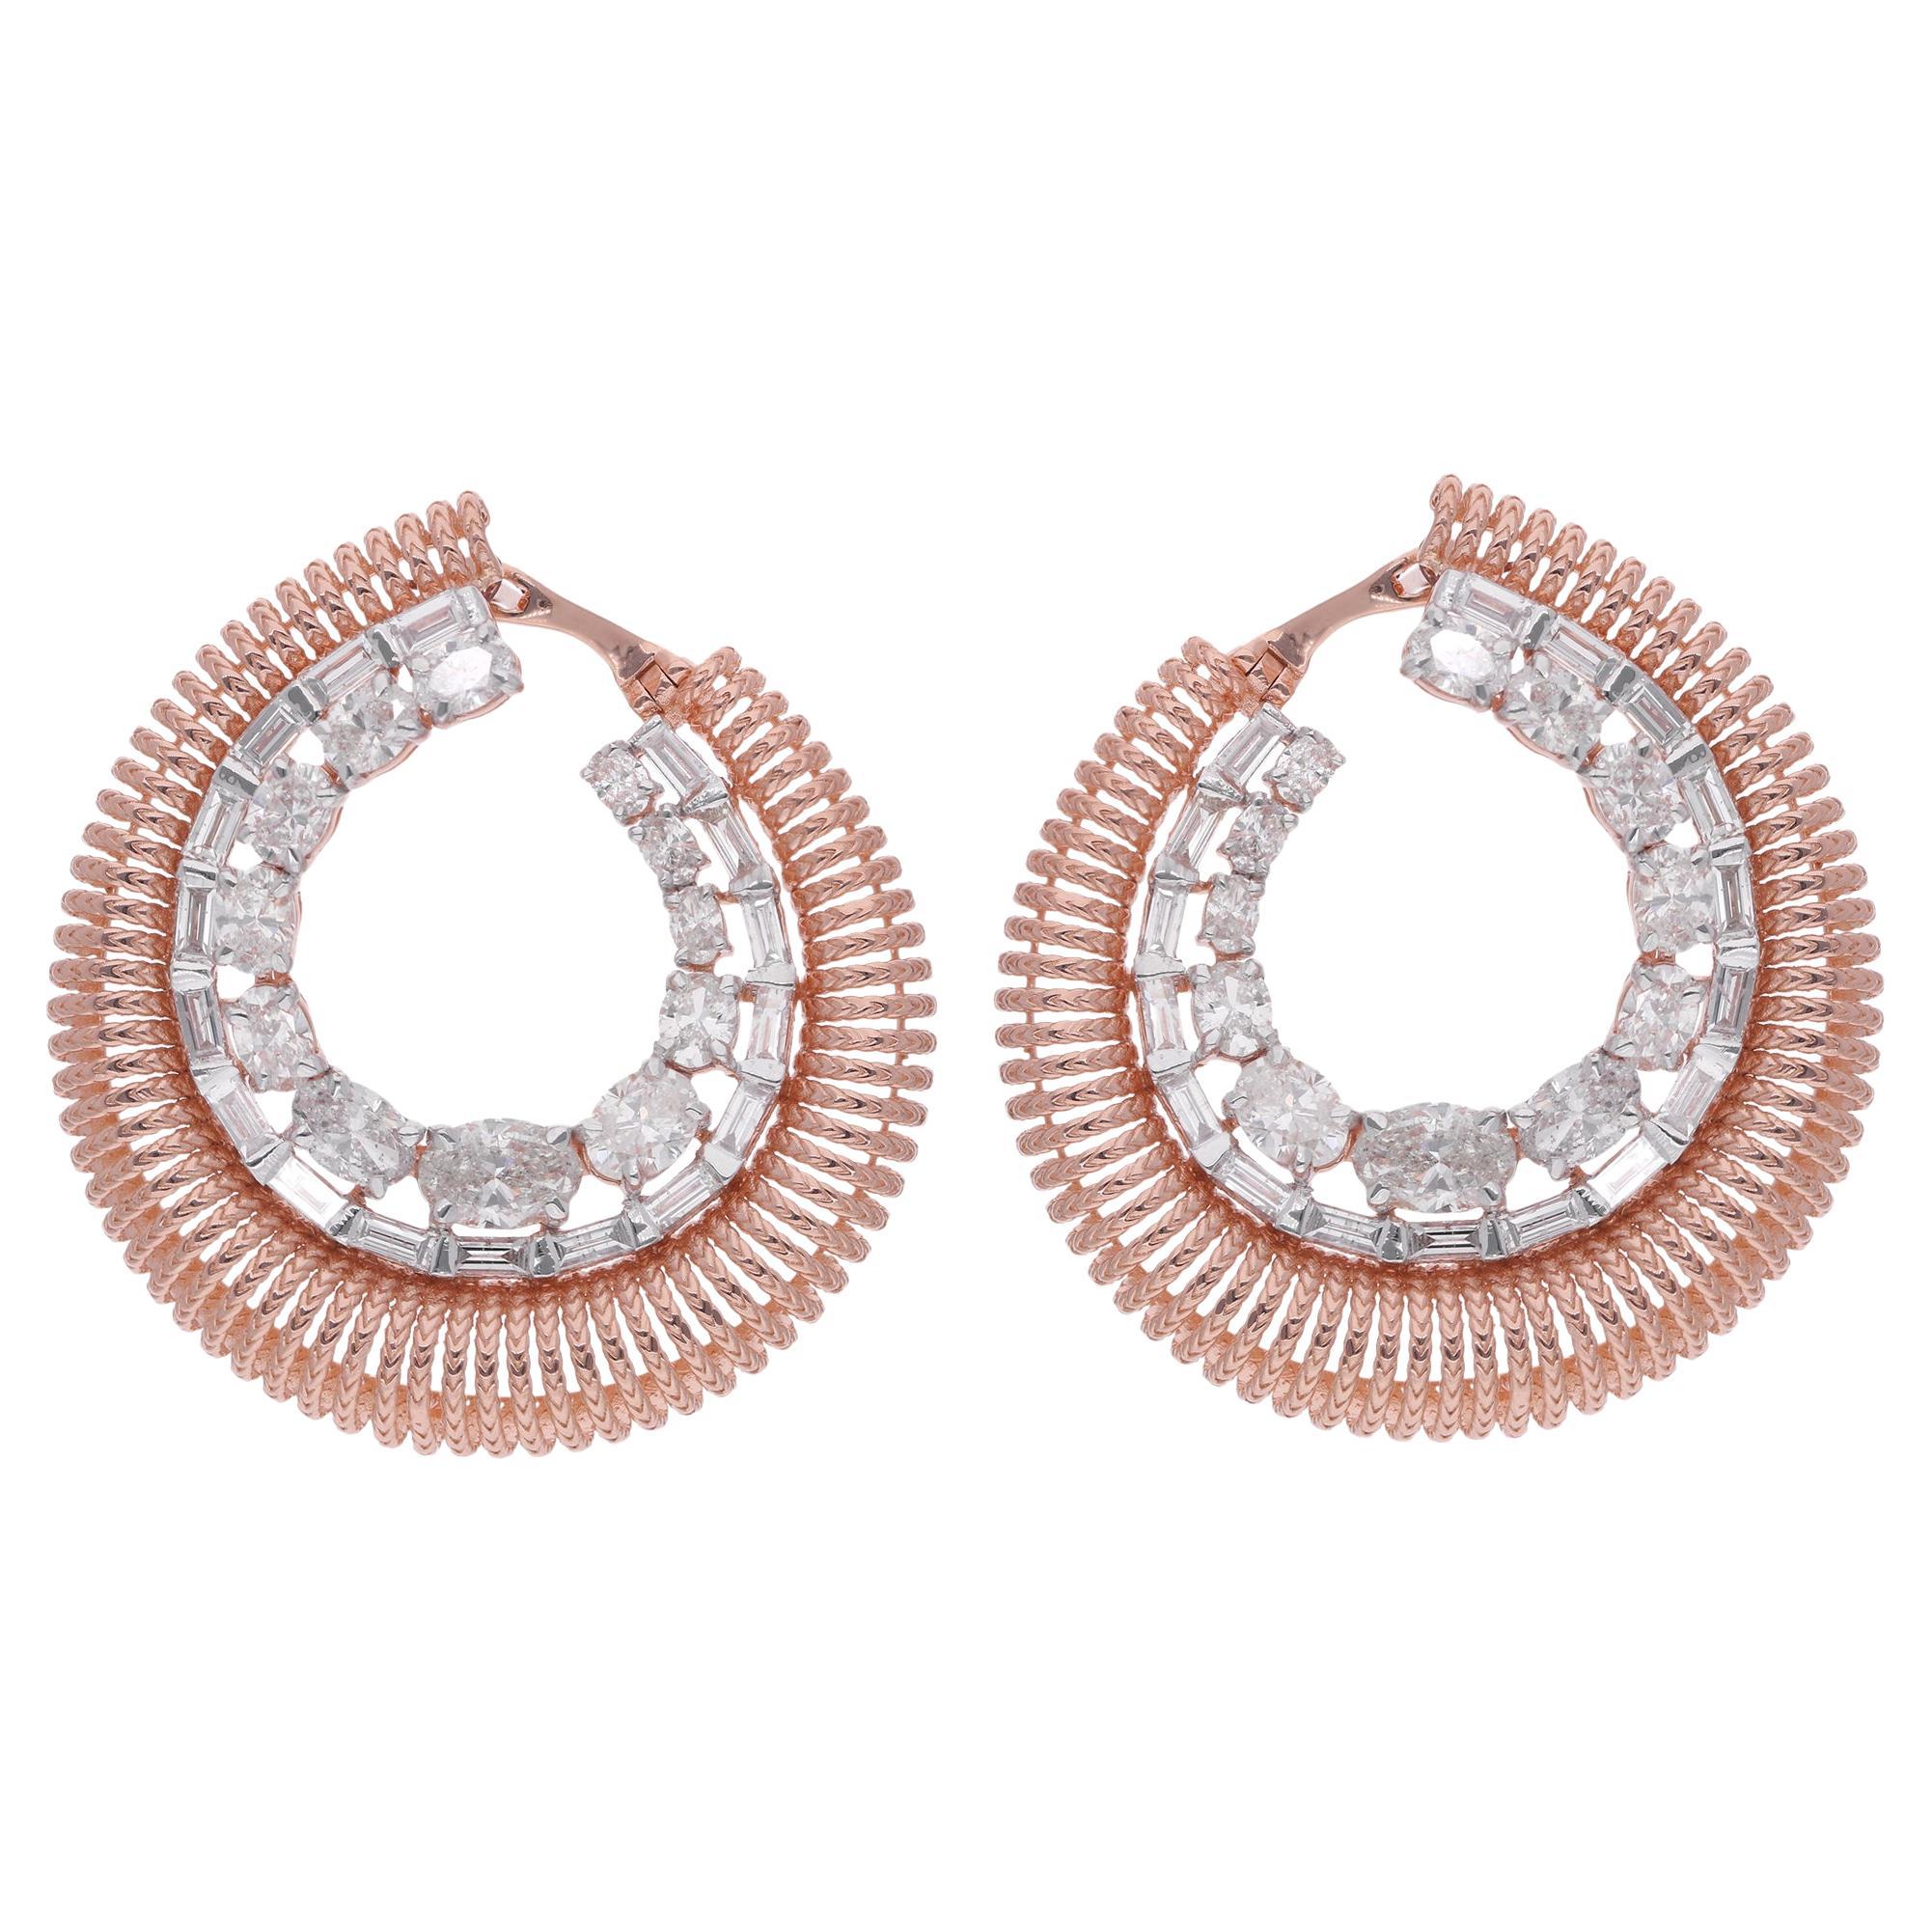 Oval & Baguette Diamond Hoop Earrings 18 Karat Rose Gold Handmade Fine Jewelry For Sale